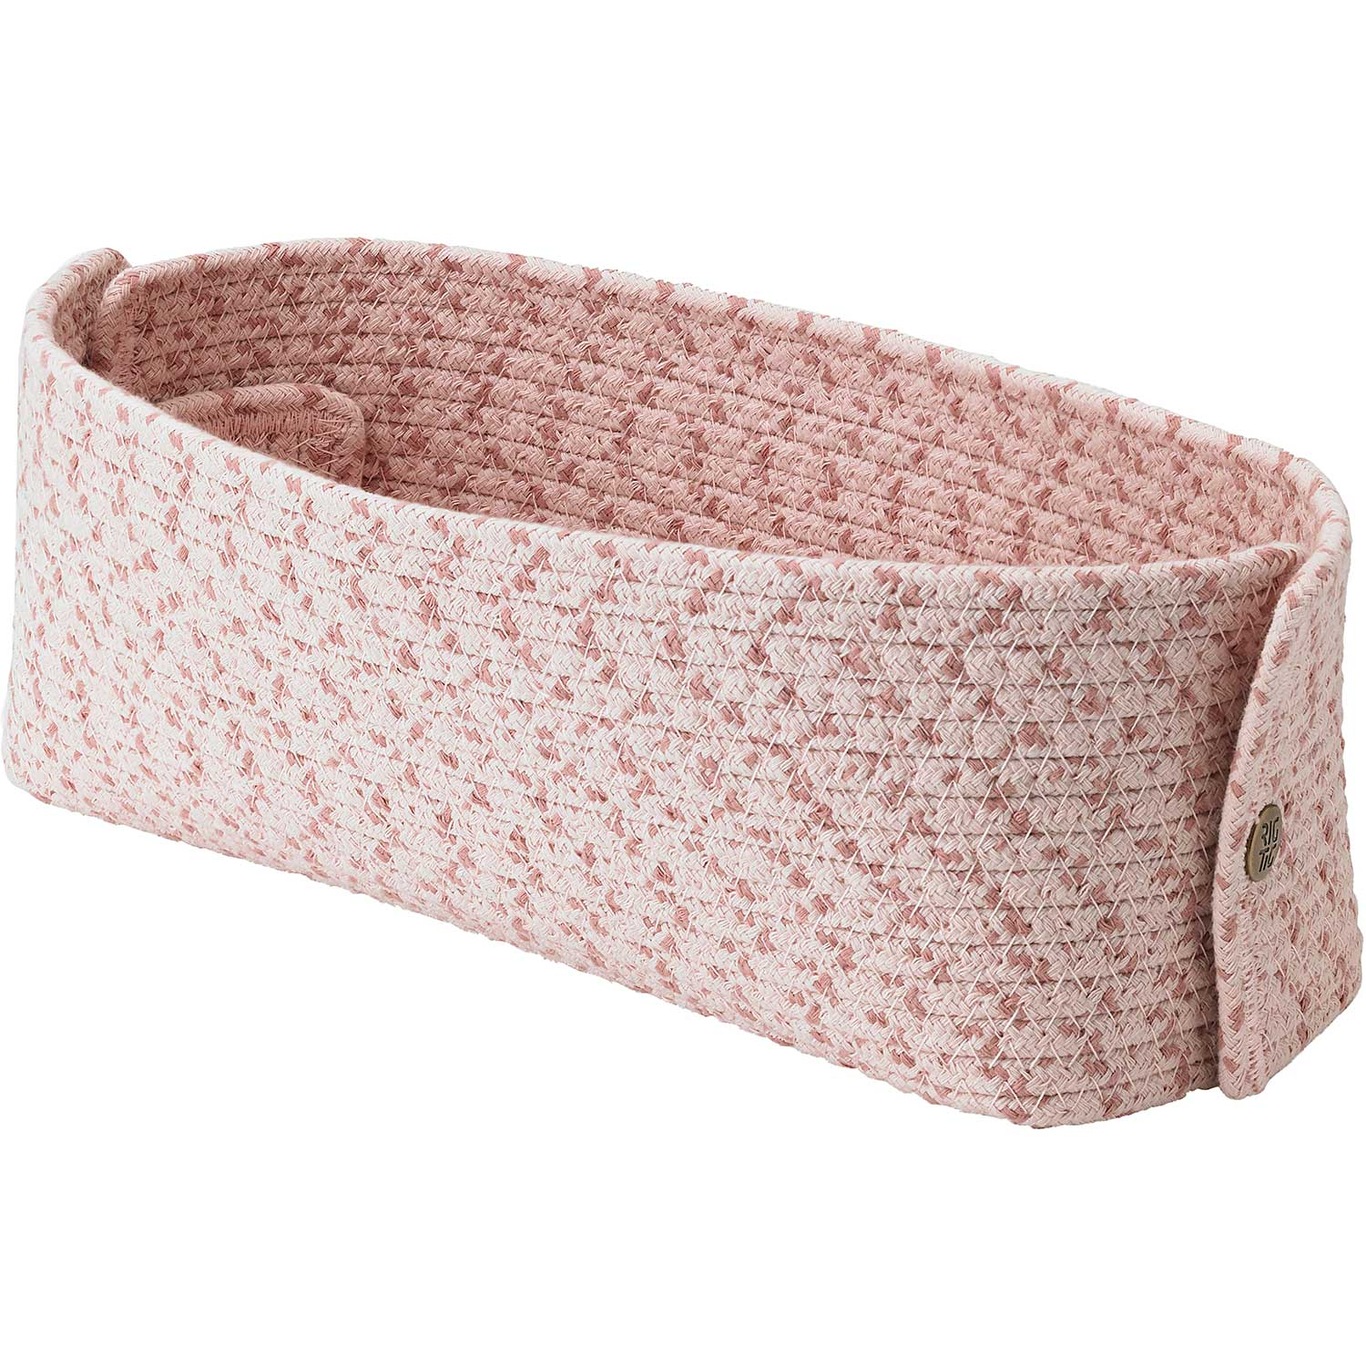 Knit-It Bread Basket, Rose